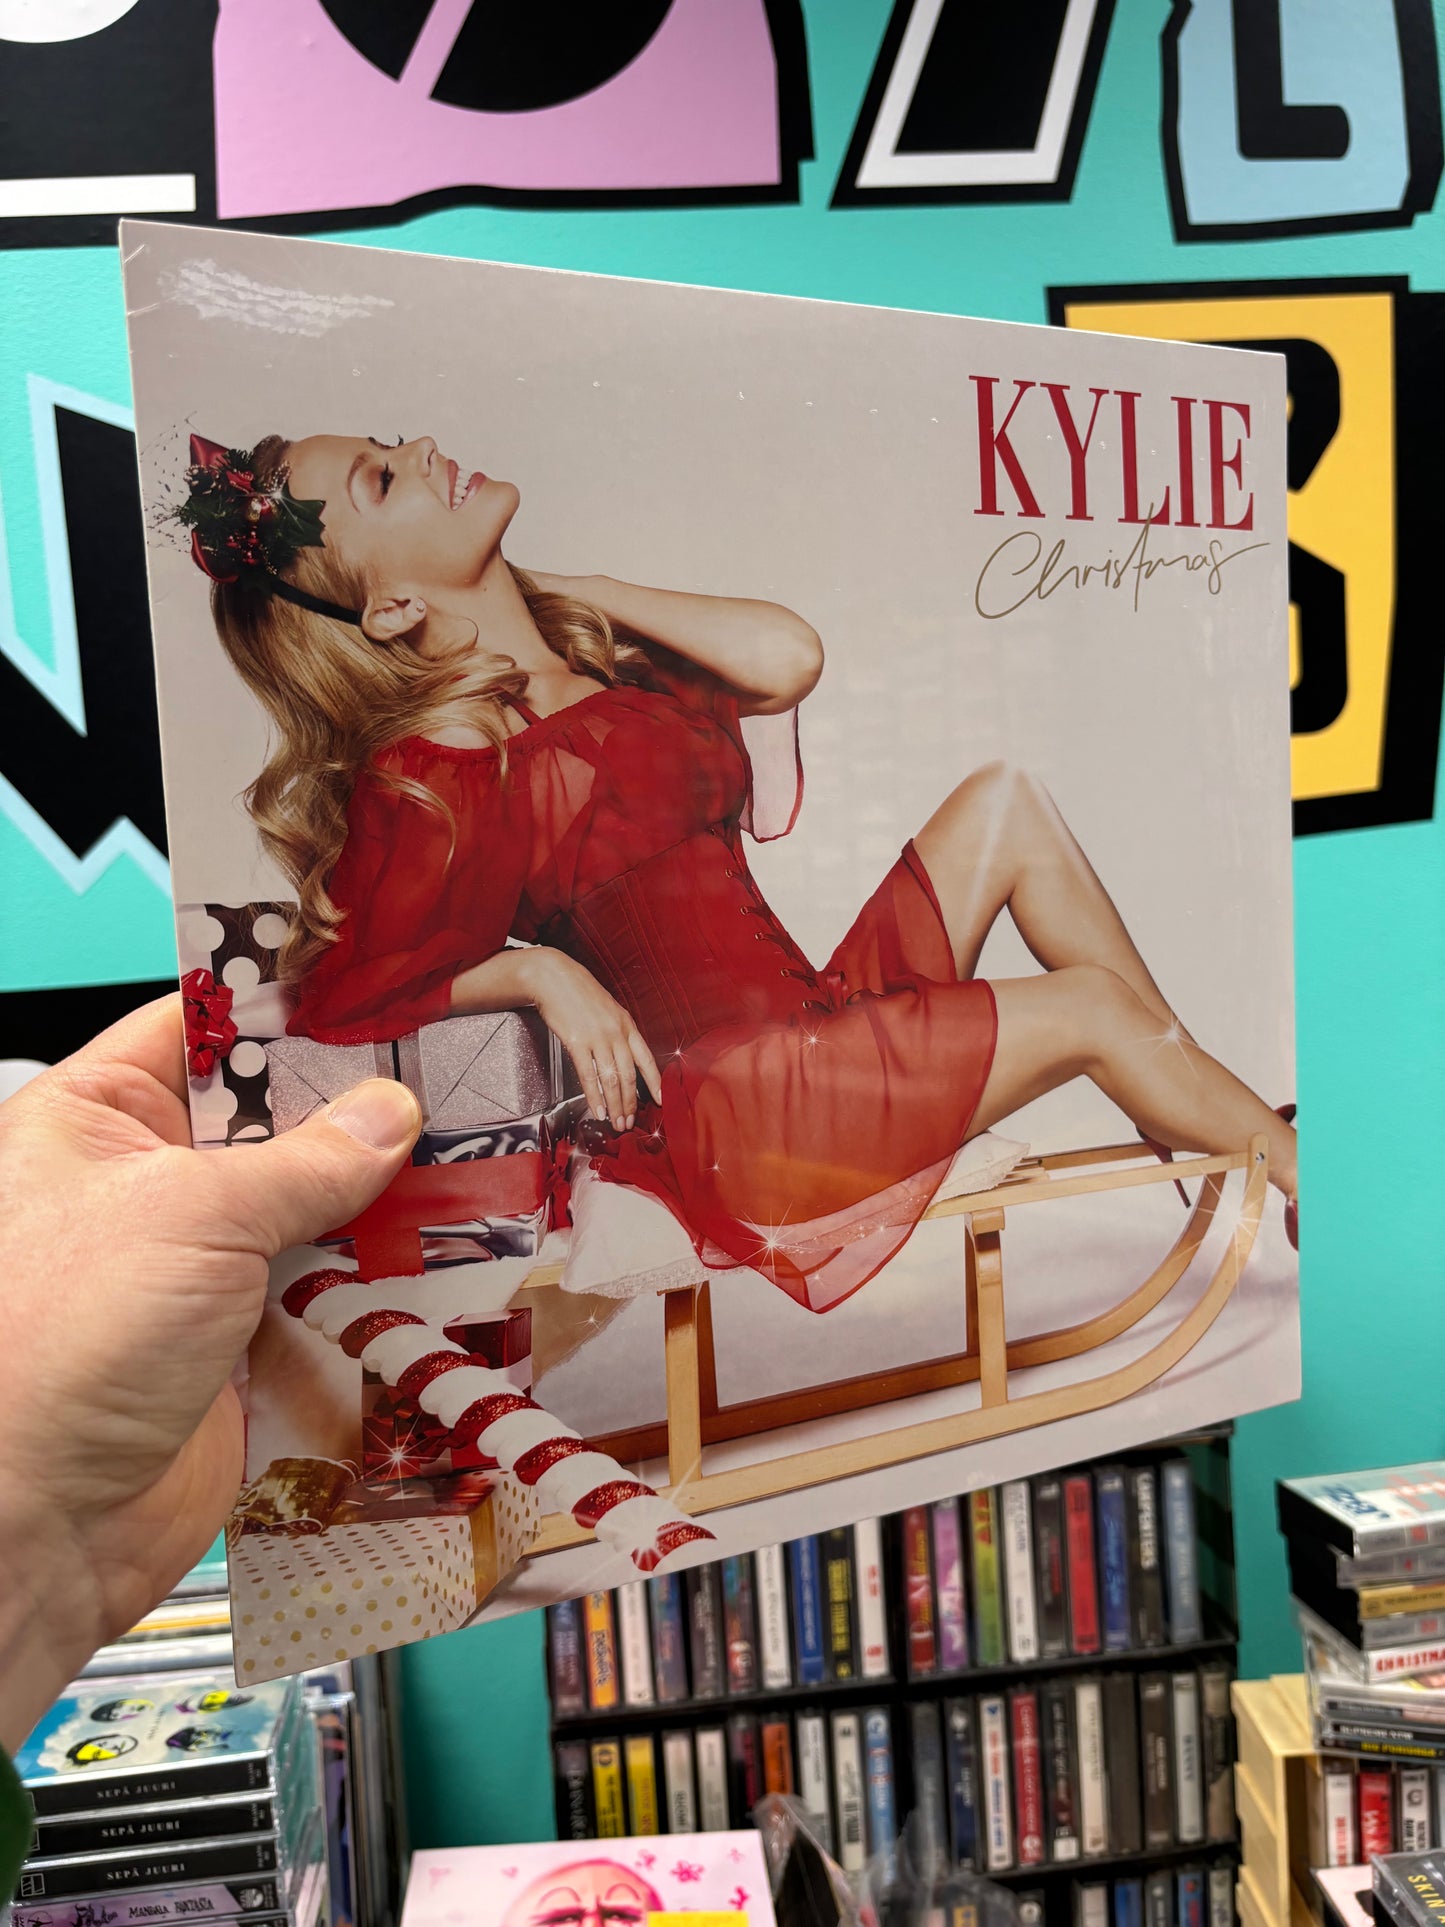 Kylie Minogue: Kylie Christmas, reissue, LP, Worldwide 2022